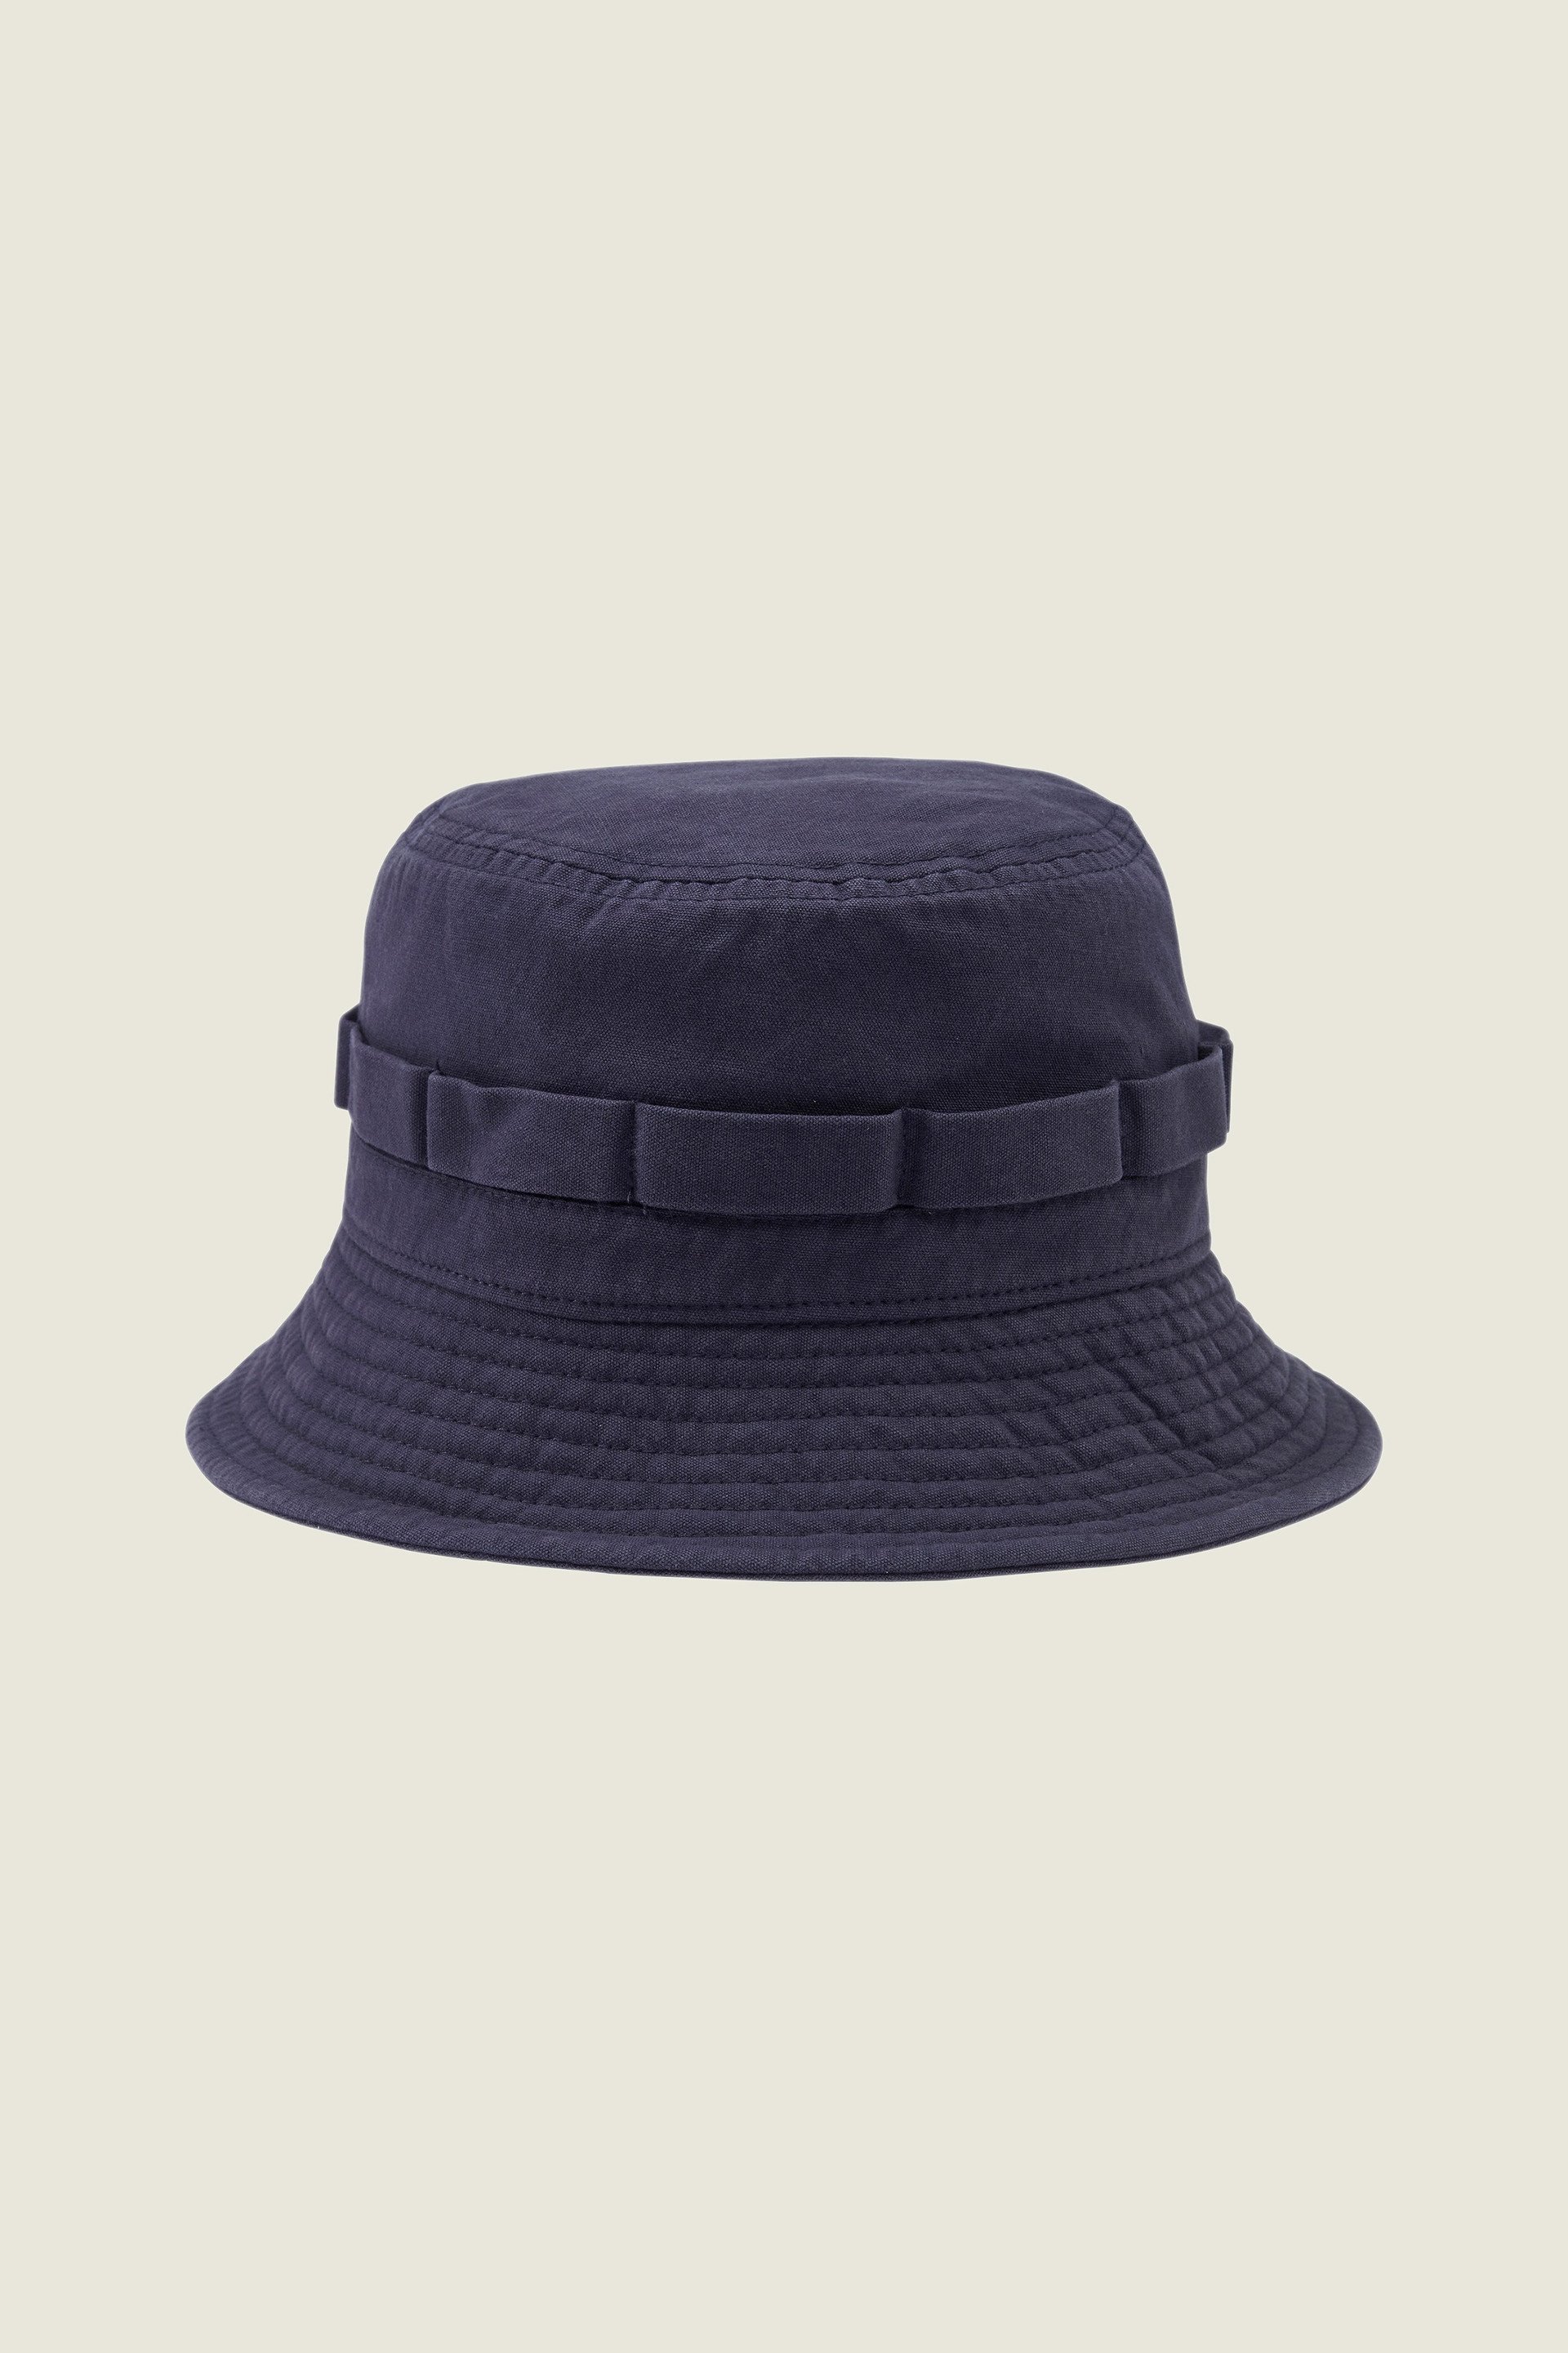 Bucket hats for men - Buy sun hats for men online